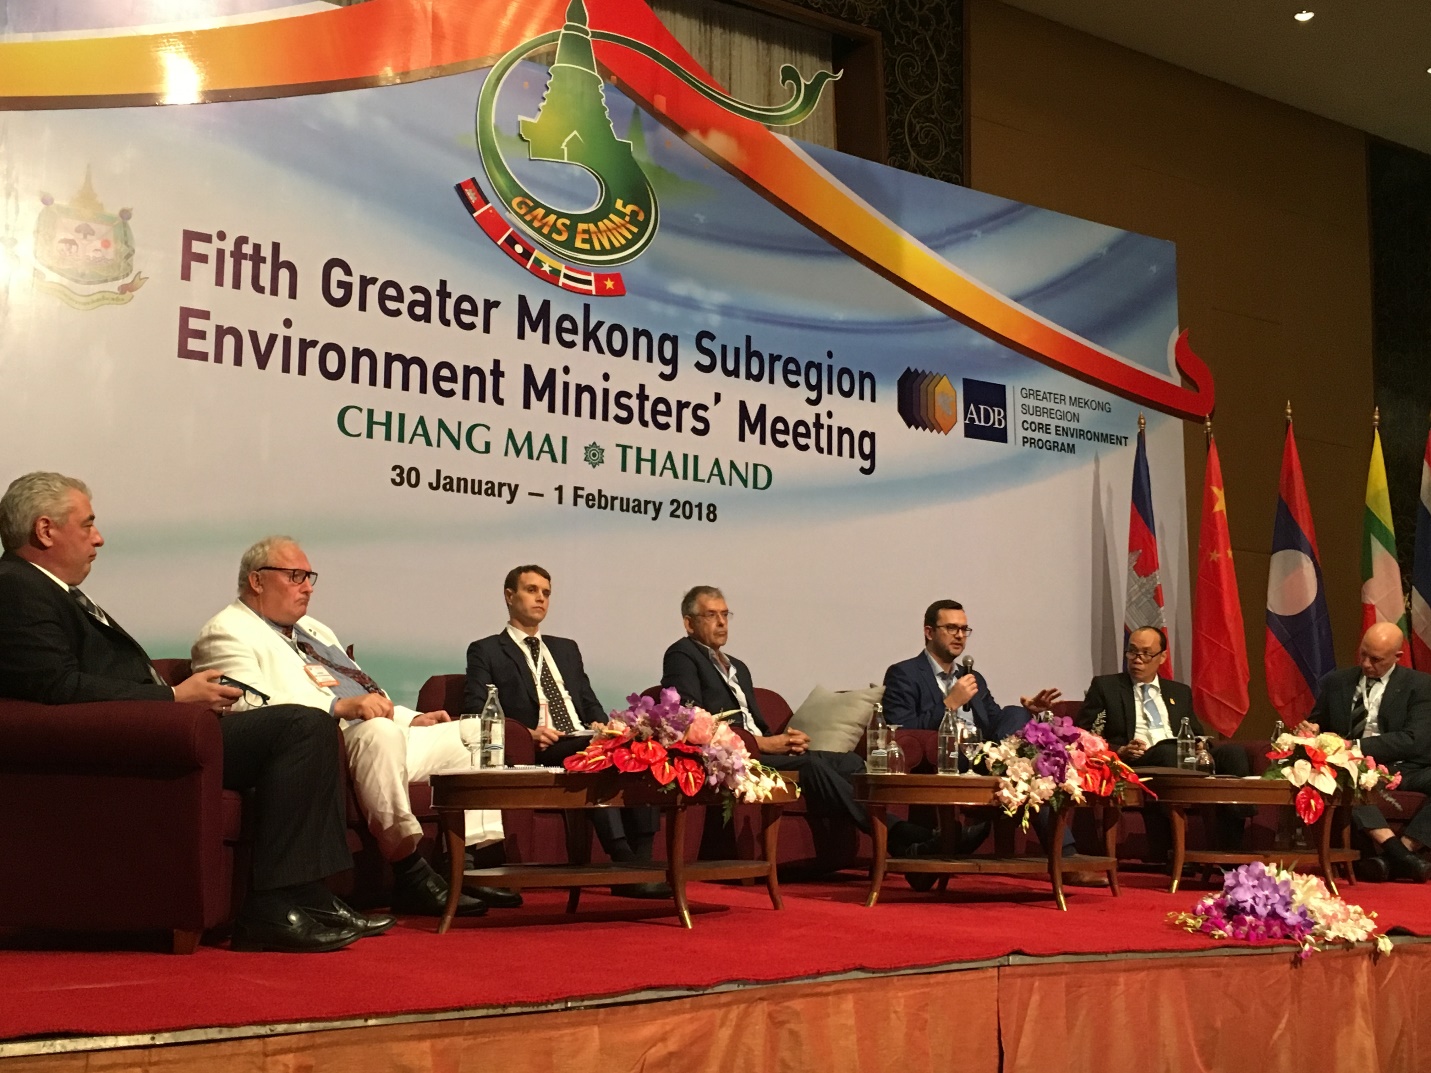 Hội nghị Bộ trưởng Môi trường GMS lần thứ 5 được tổ chức từ ngày 30 tháng 1 đến ngày 1 tháng 2 năm 2018 tại Chiang Mai,Thái Lan